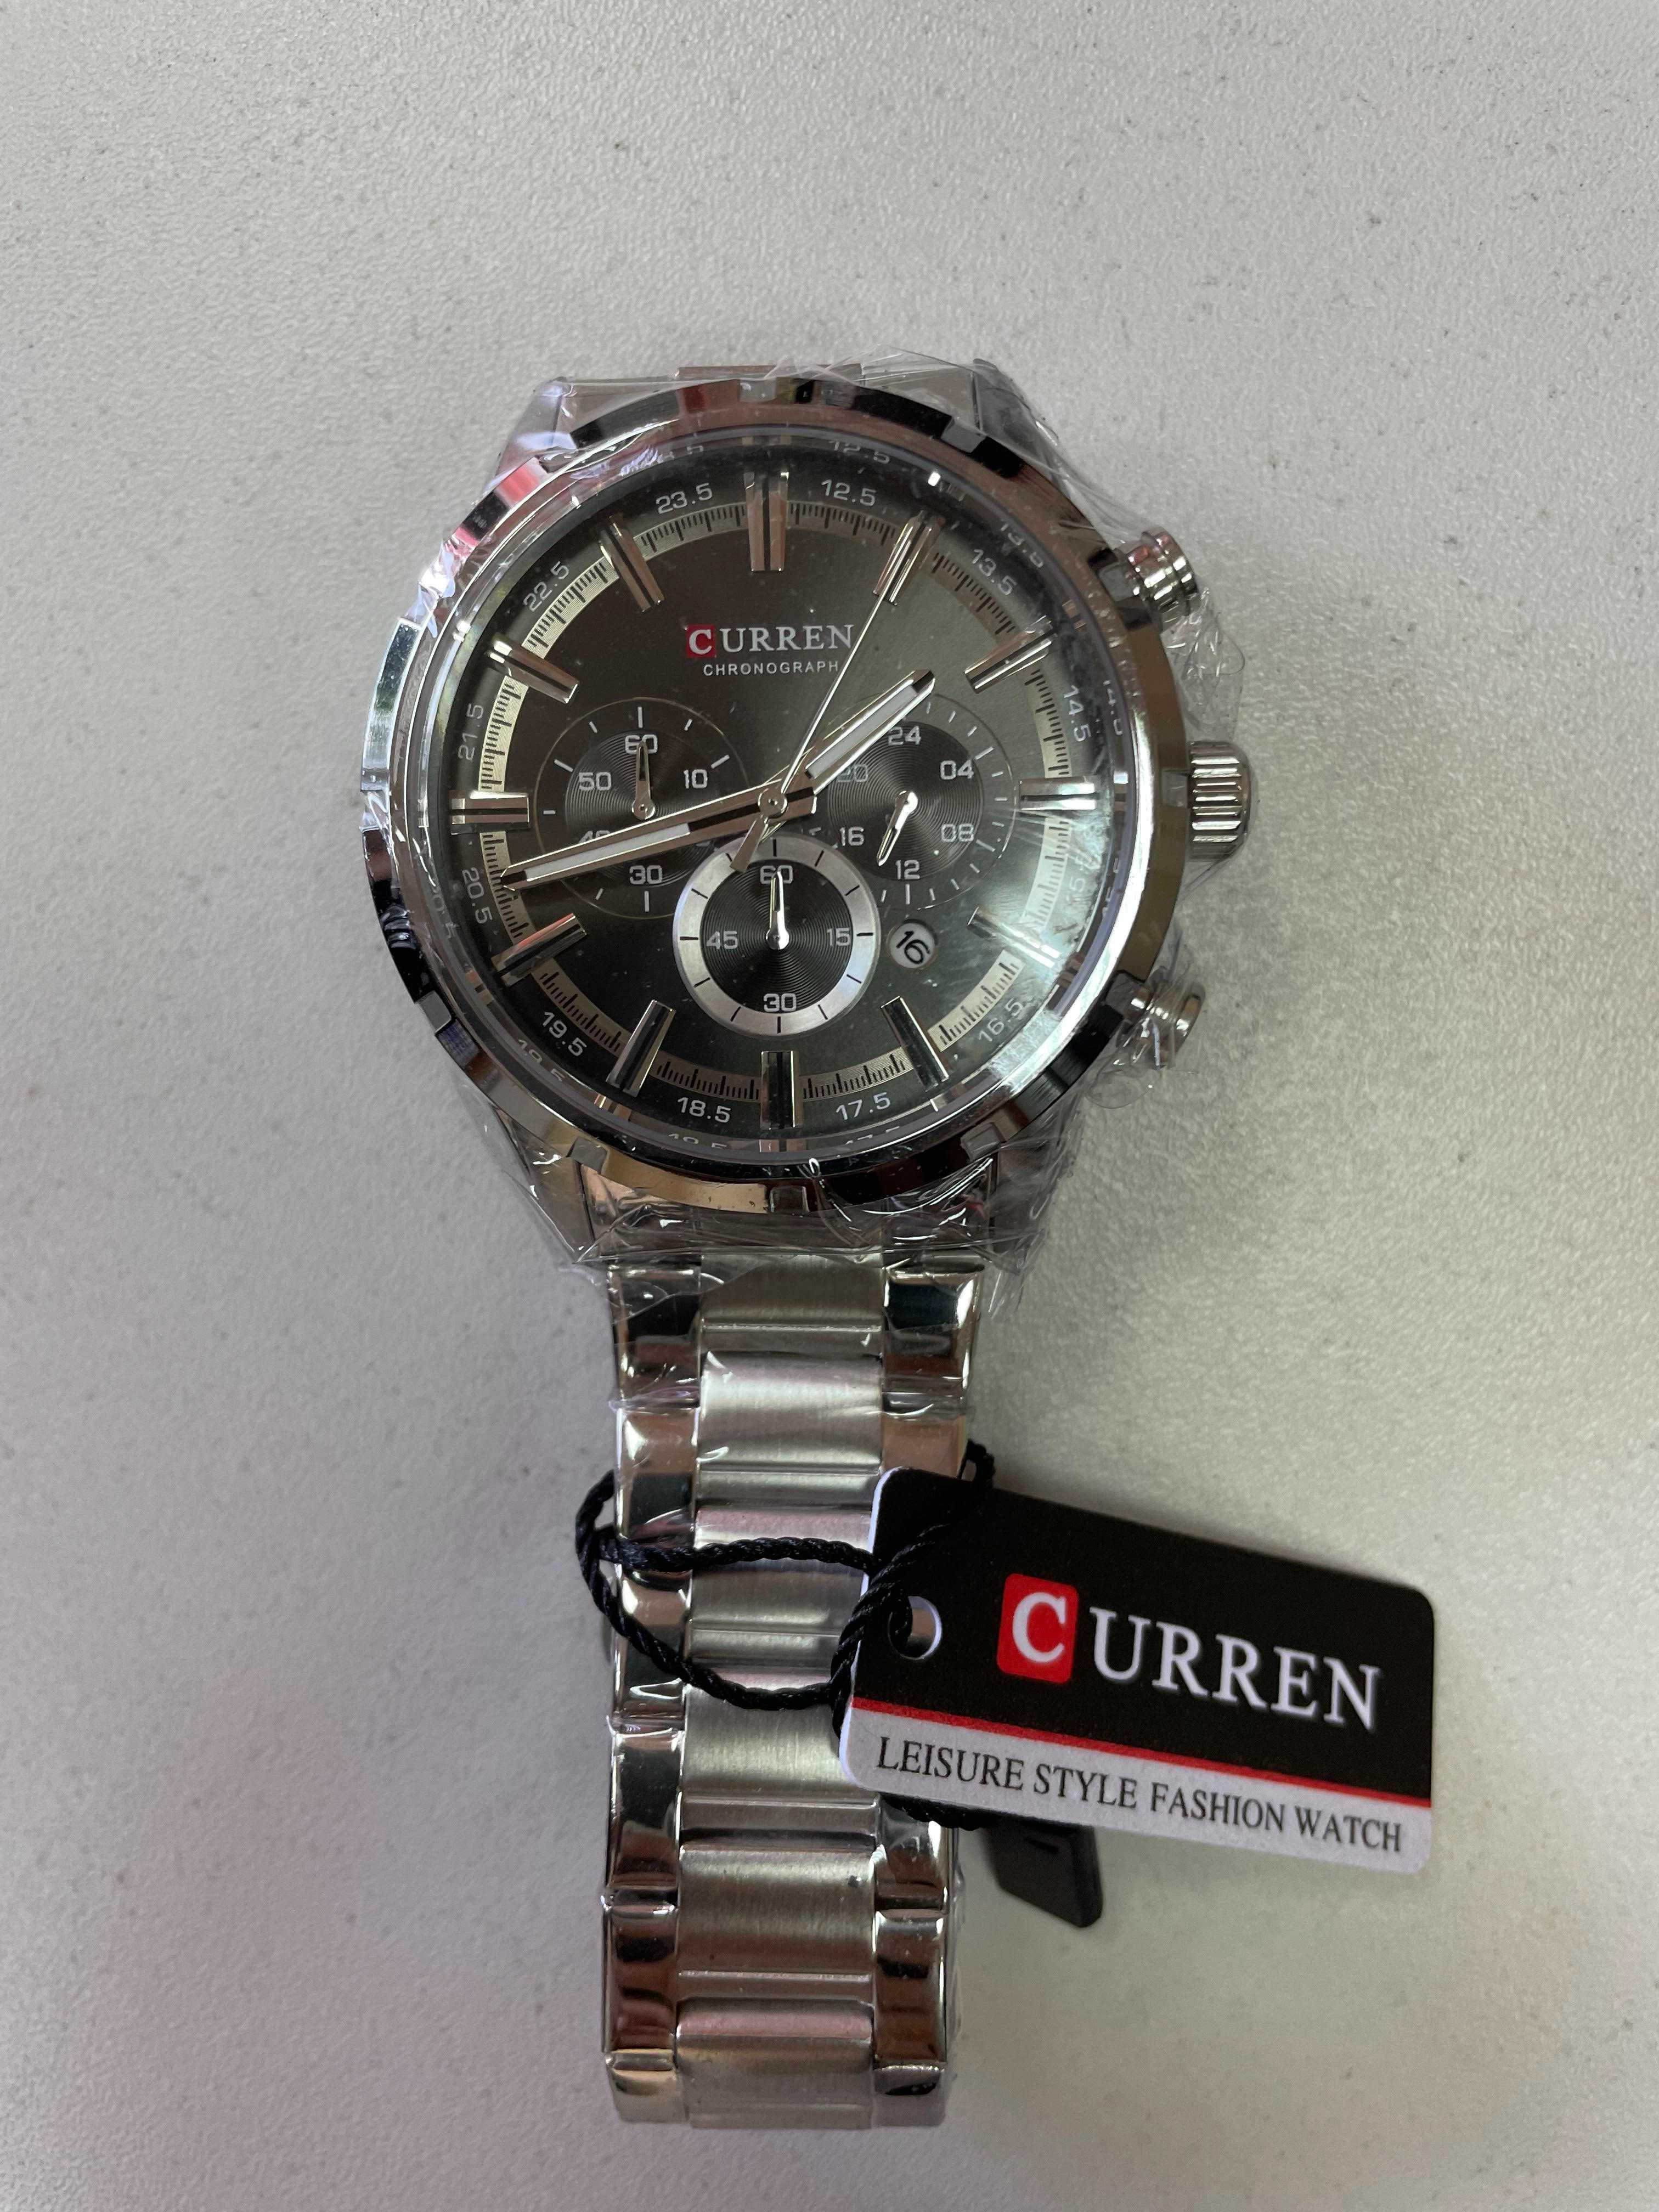 Мужские кварцевые наручные часы Curren хронометр, новые в подар.упак.